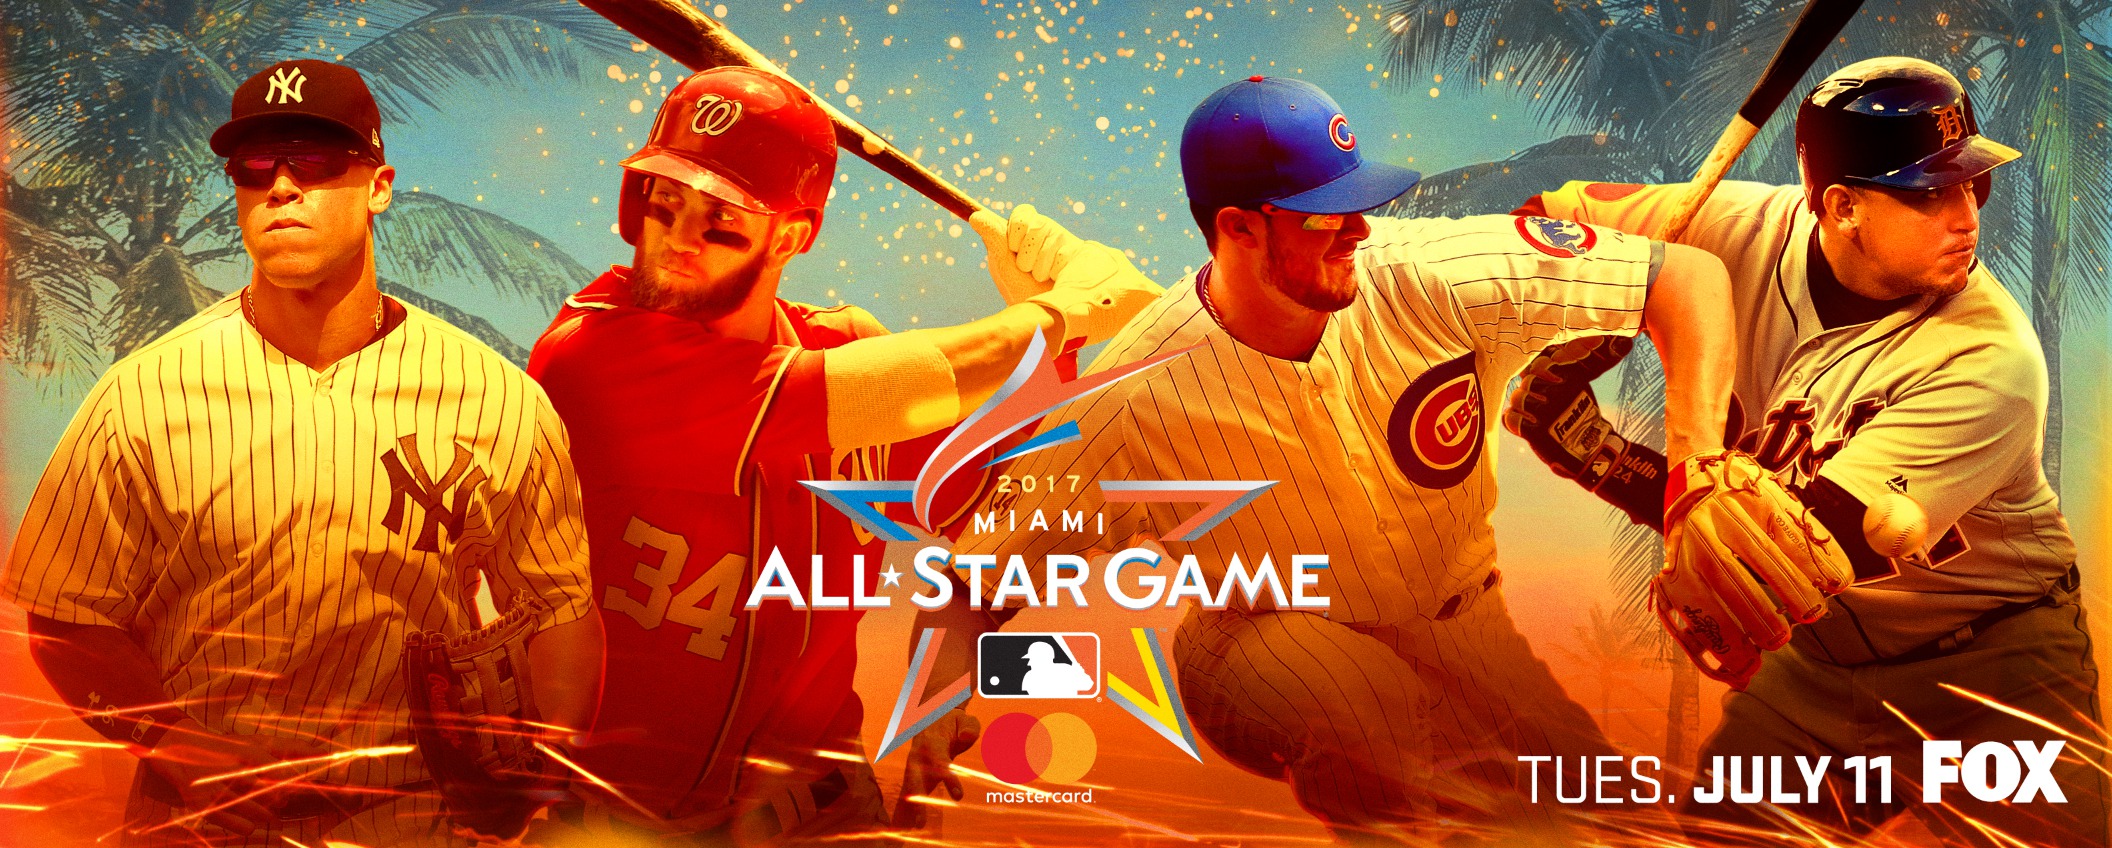 Mega Sized TV Poster Image for MLB All-Star Game 